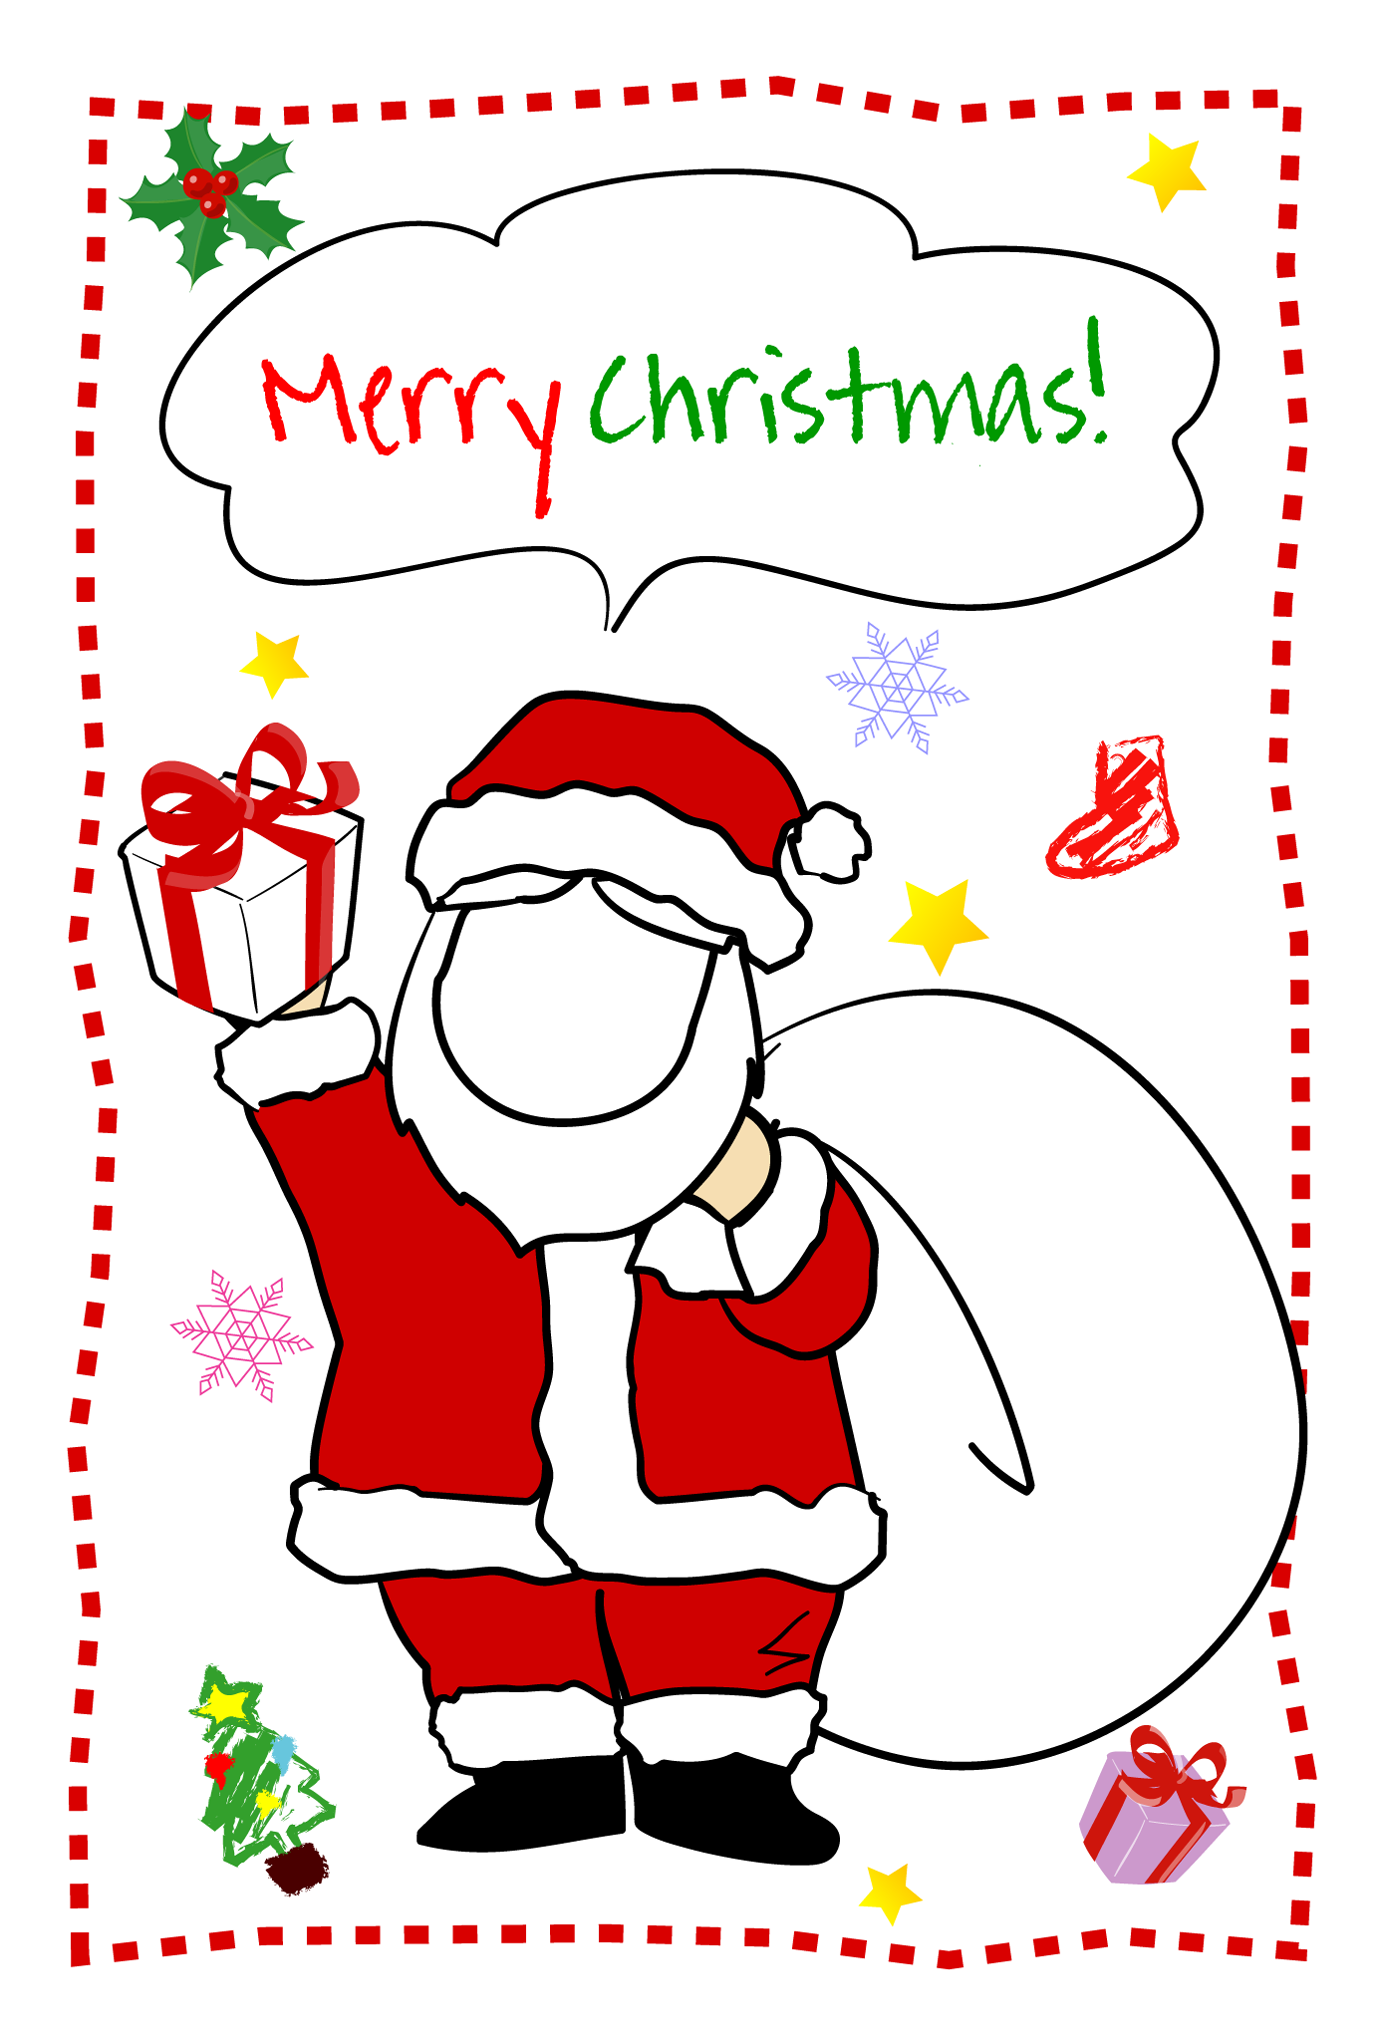 無料クリスマス イラスト素材 素材絵箱クリスマス館 印刷素材クリスマスカードテンプレート写真フレーム サンタクロース1